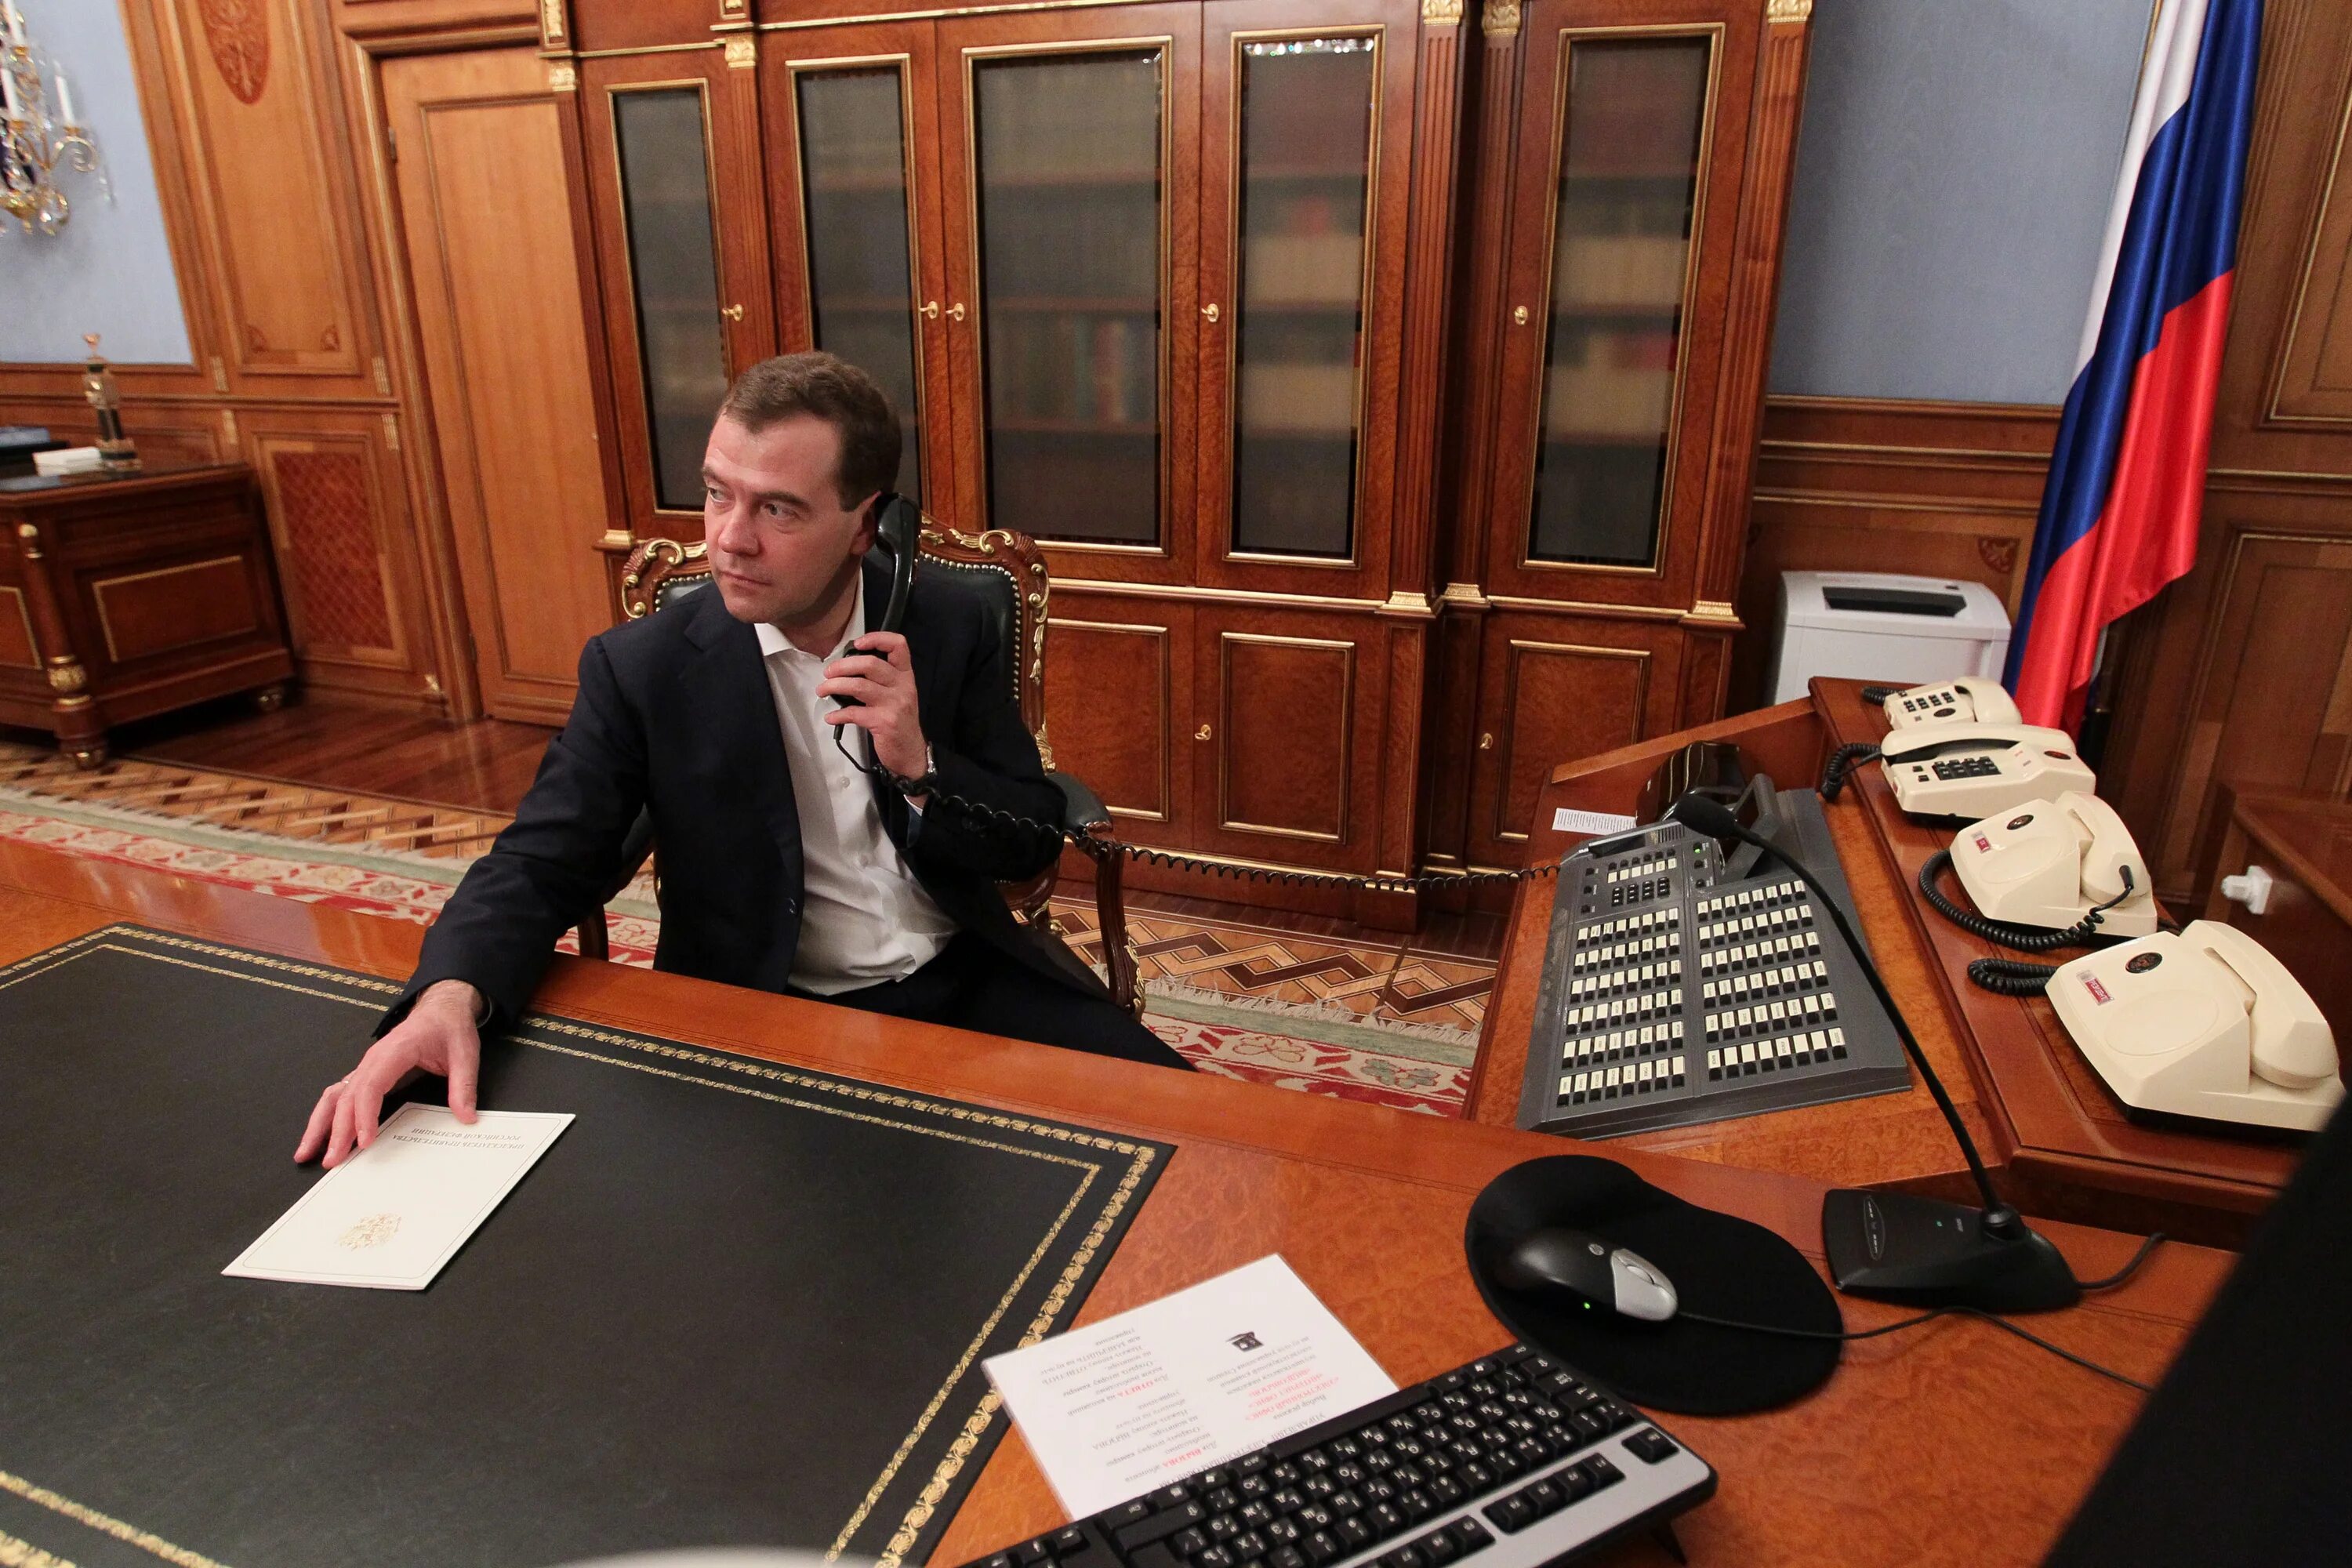 Где живет премьер министр. Кабинет премьер министра Дмитрия Анатольевича Медведева.